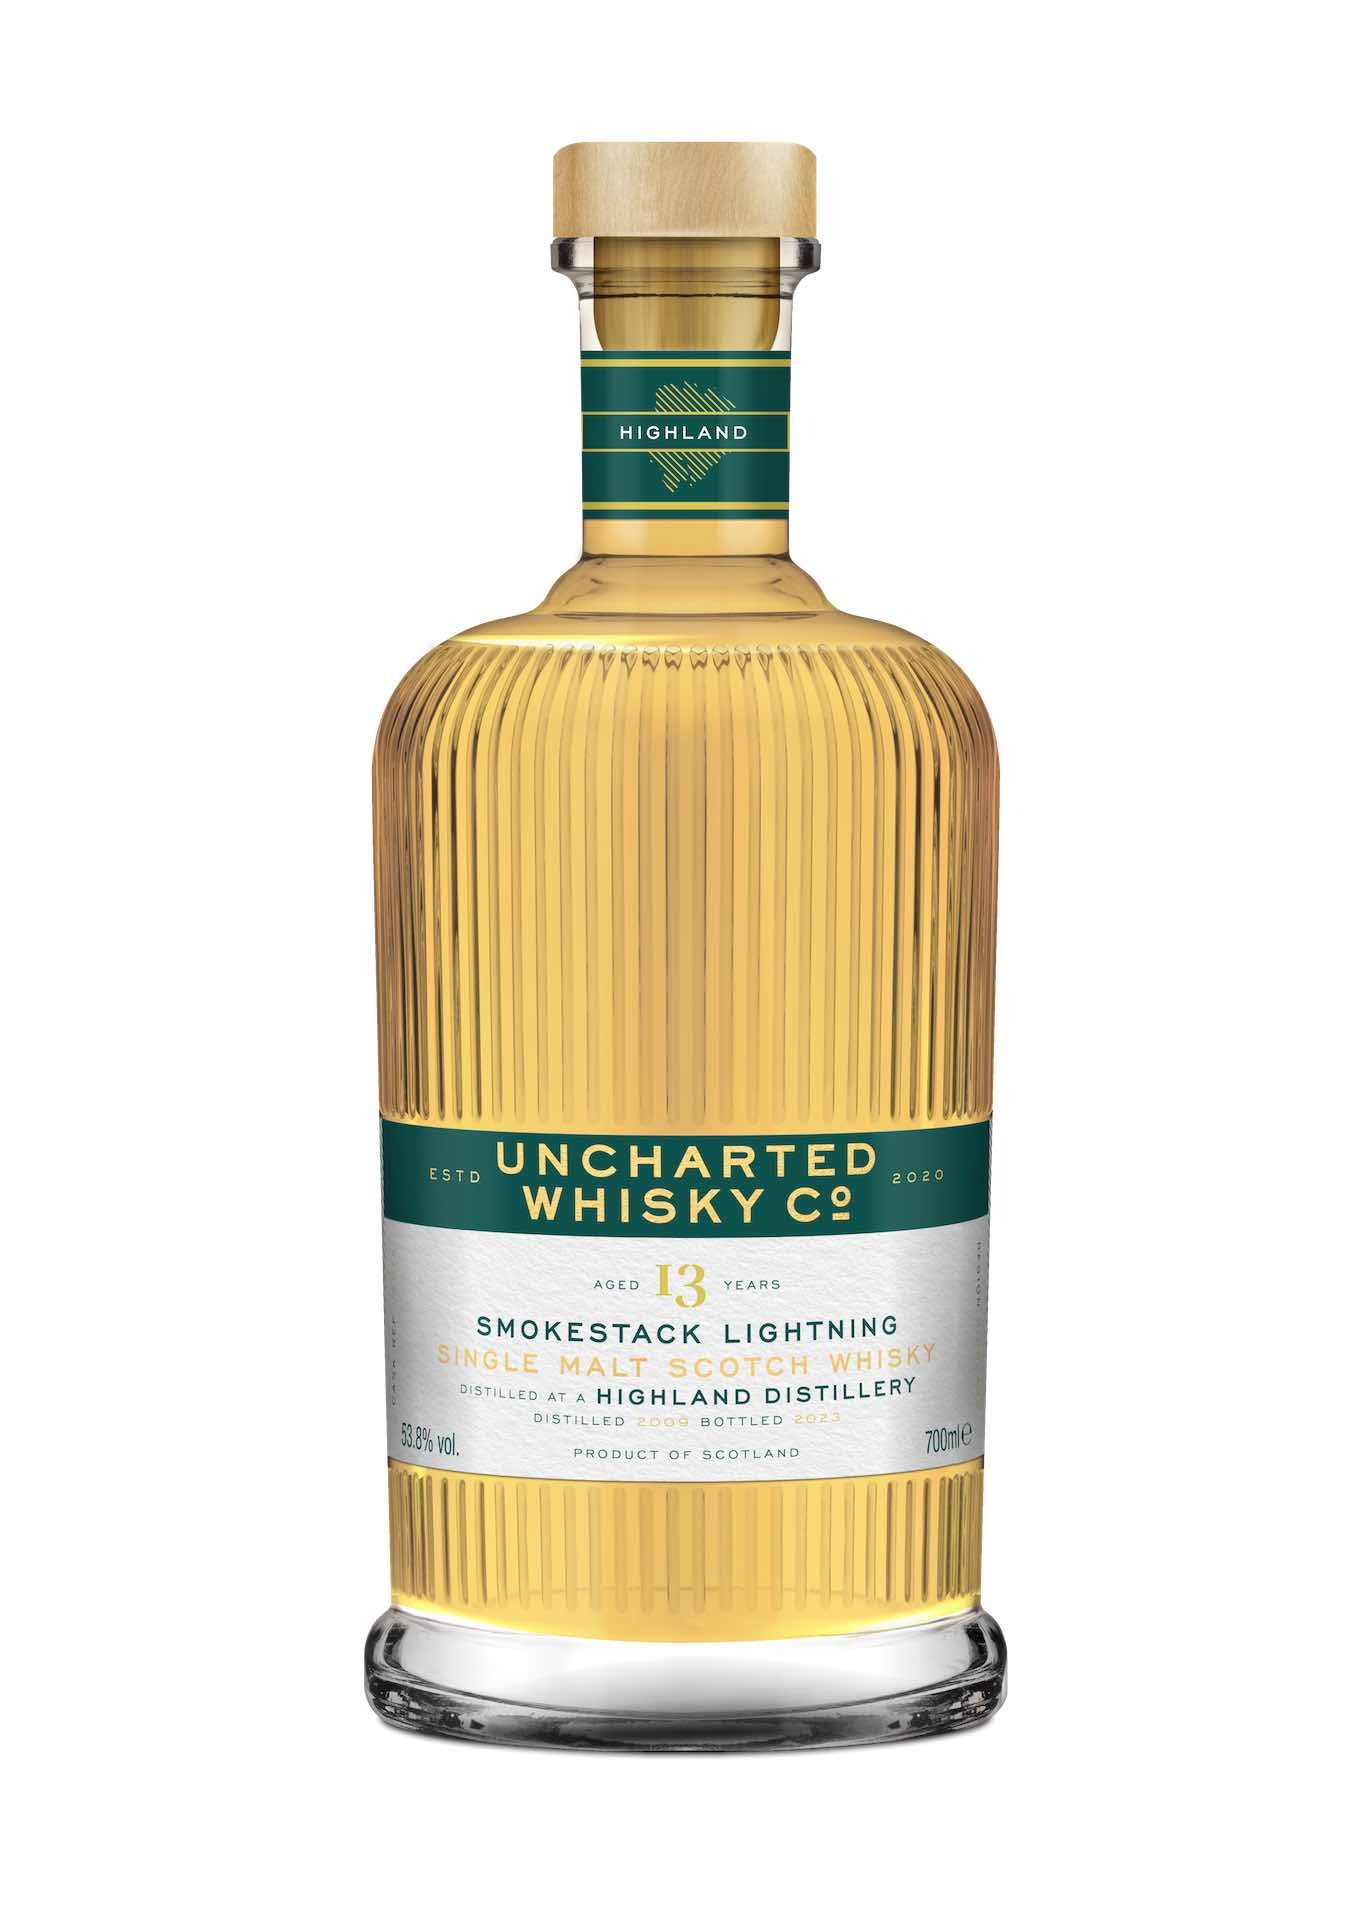 Uncharted Whisky Co, Smokestack Lightning, Peated Highland Malt 13 Year Old